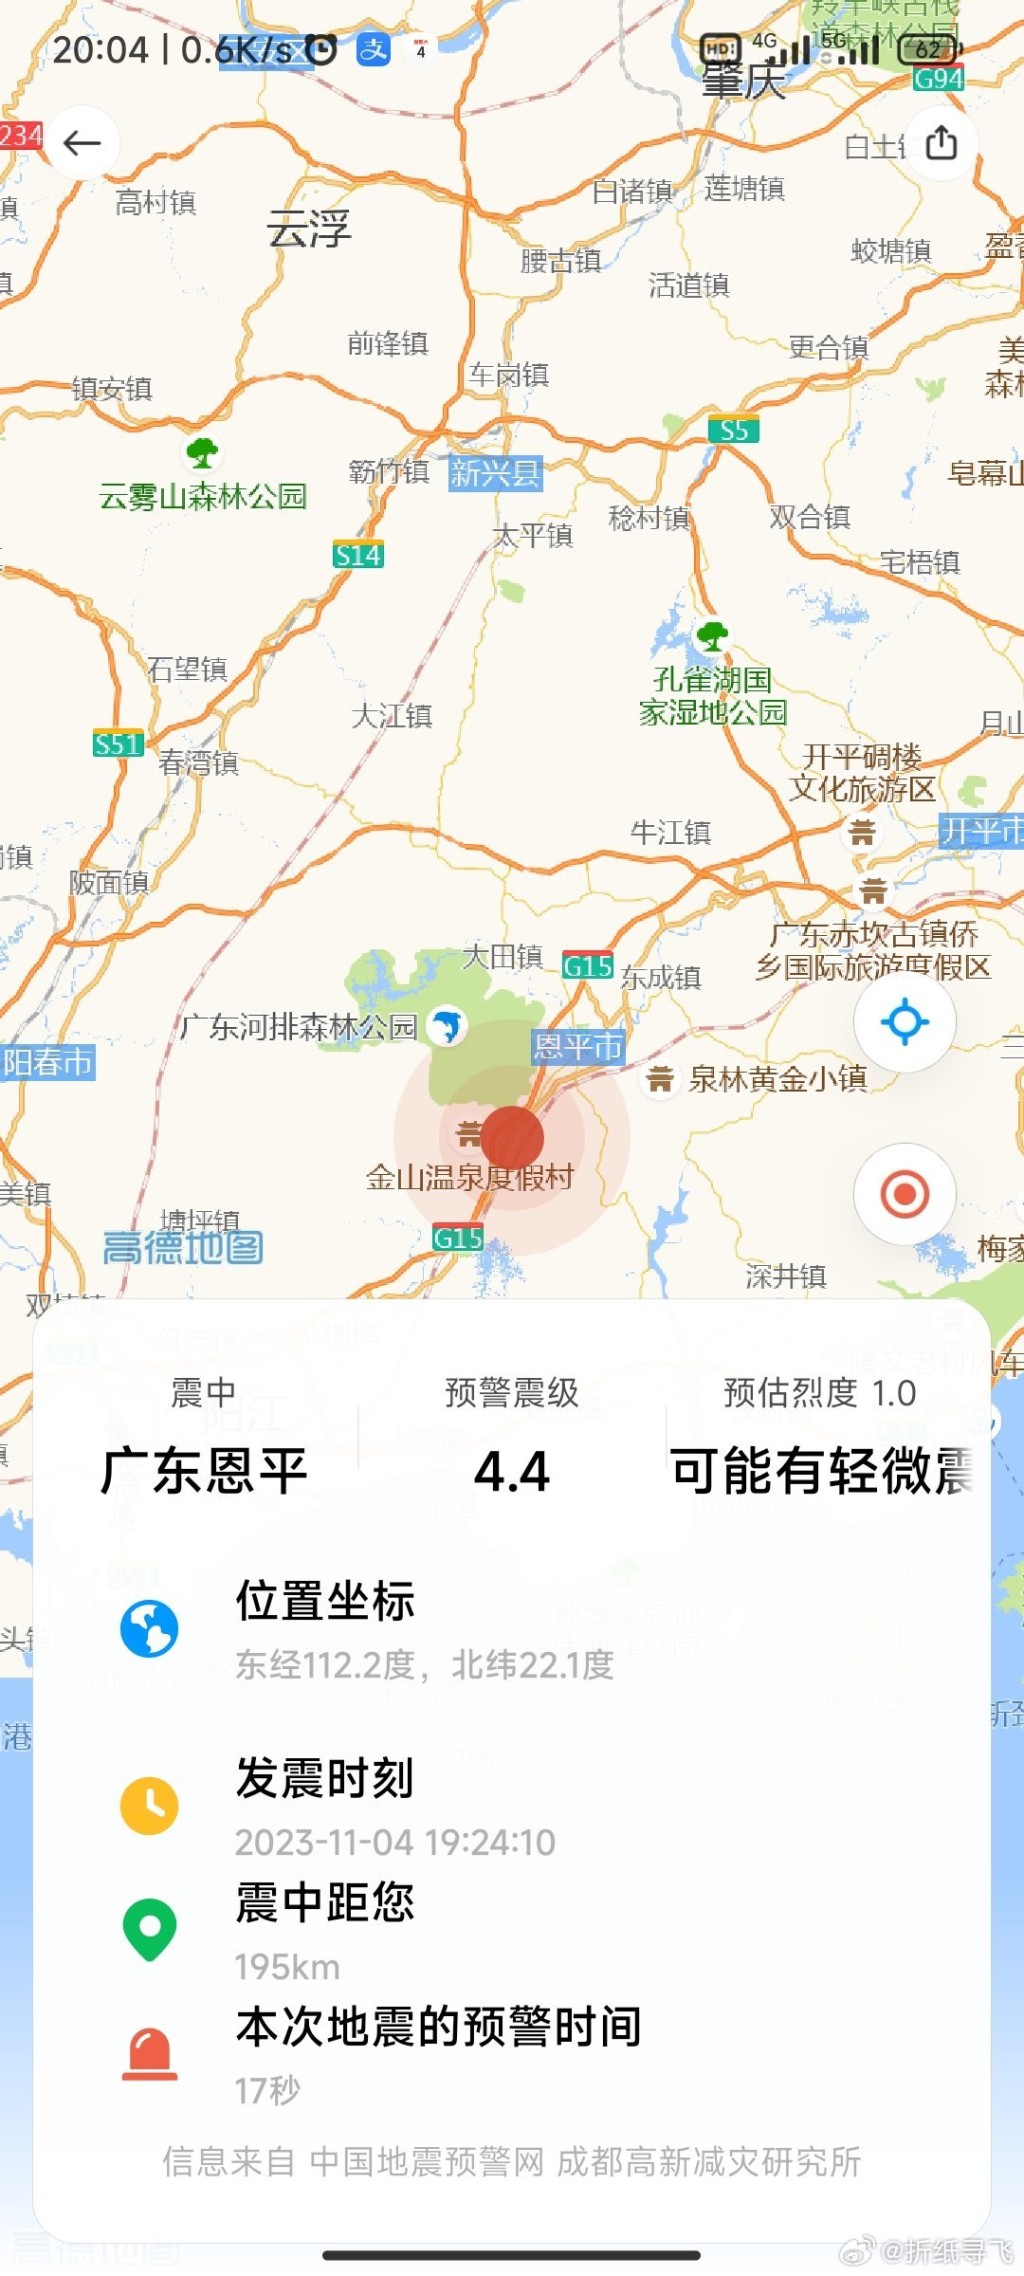 地图上显示的地震位置。